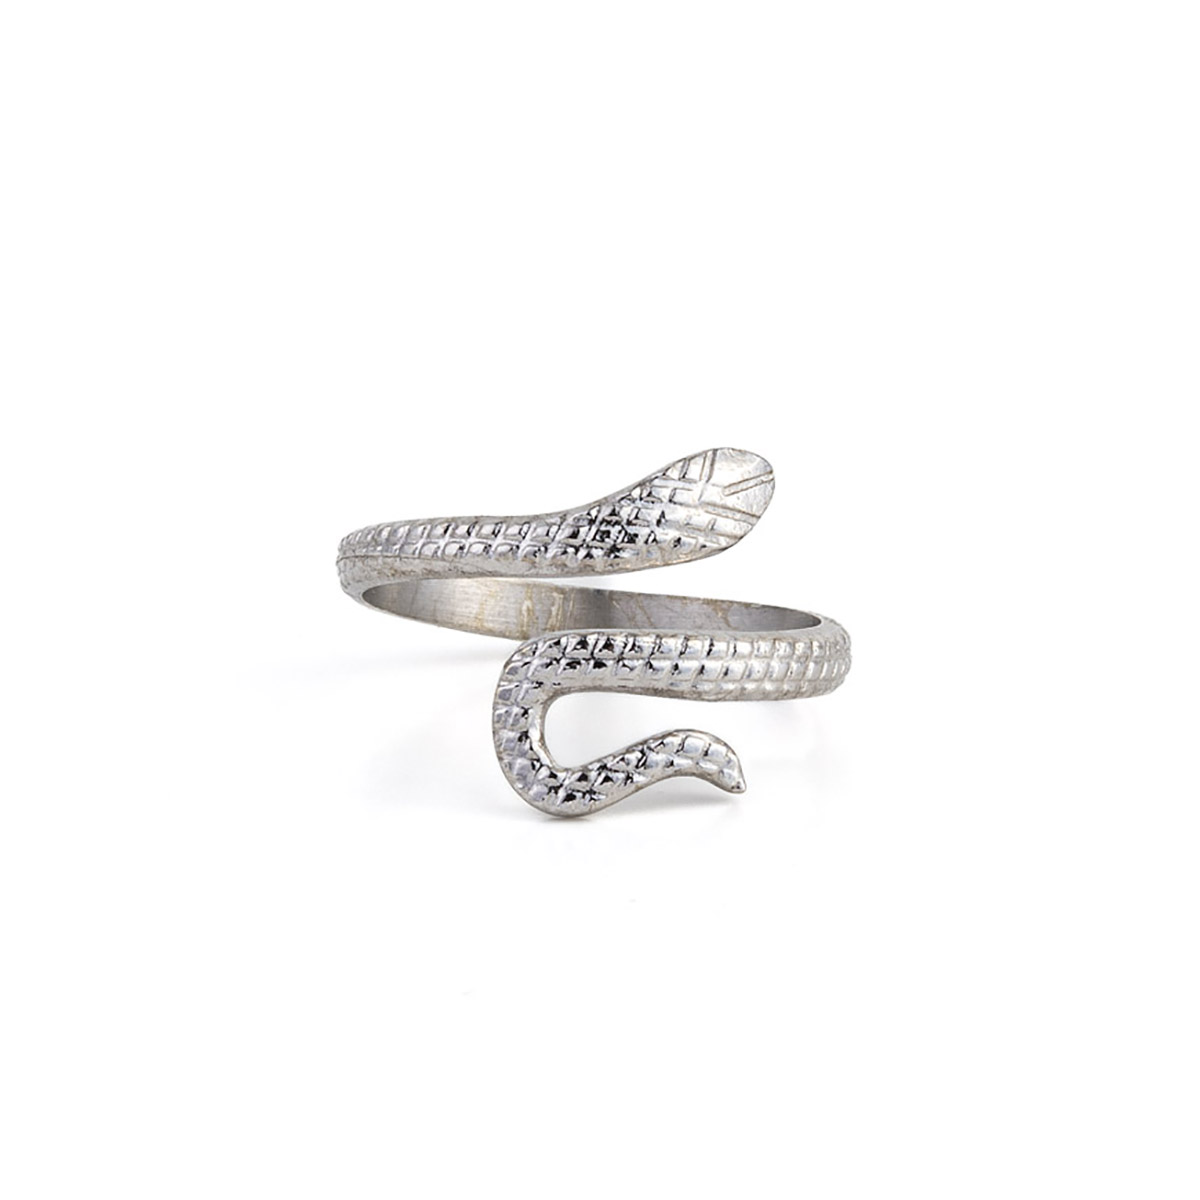 Minimal Silver Snake Ring